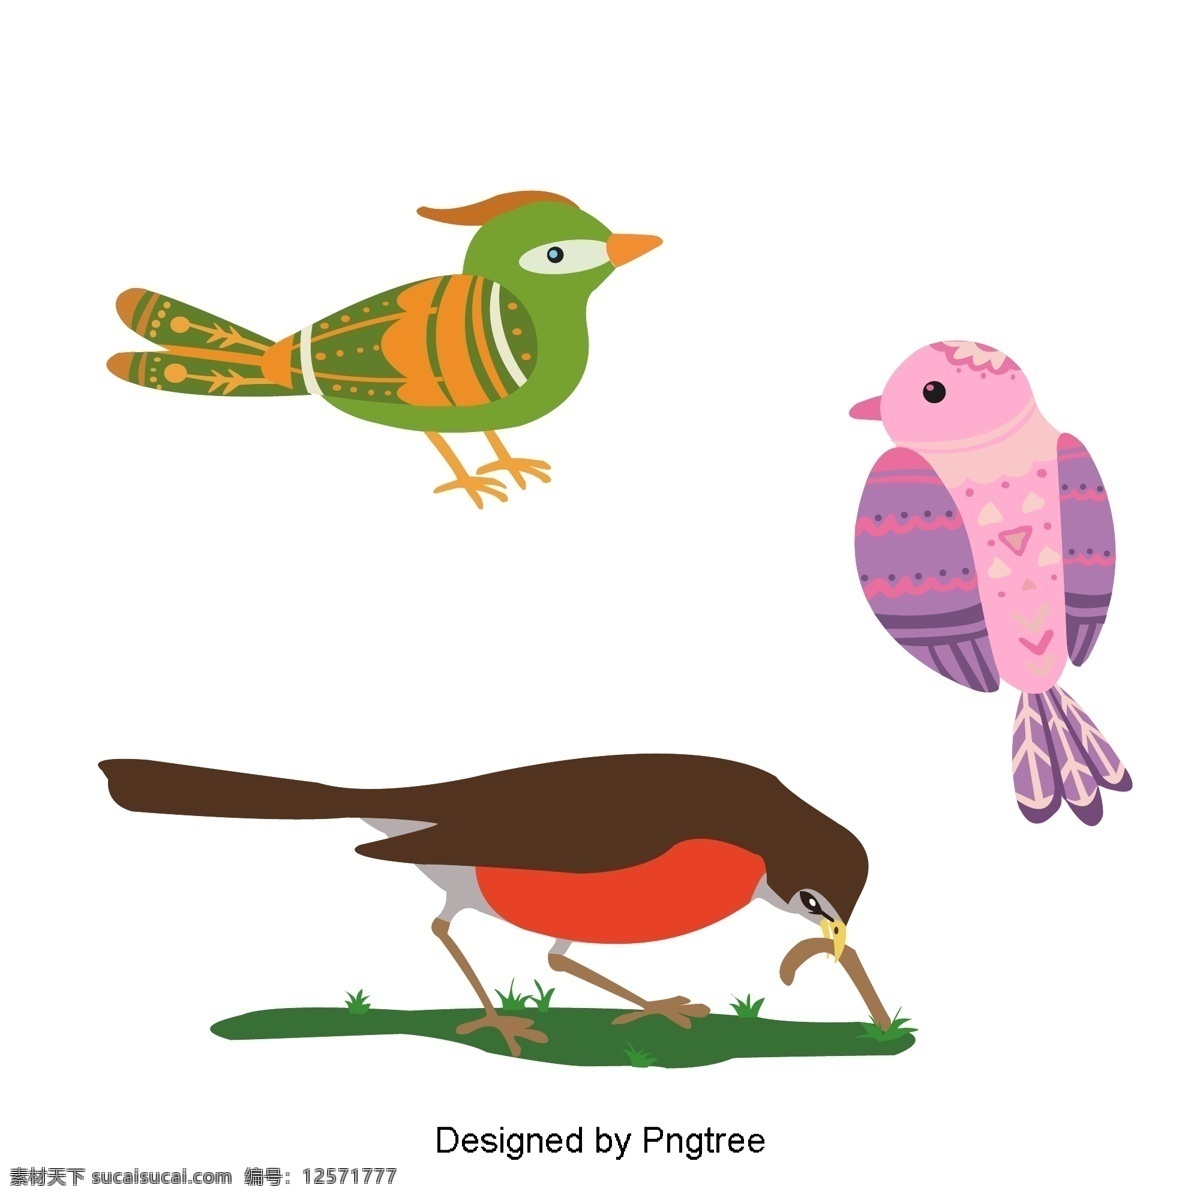 简单 手绘 花鸟 材料 卡通 鸟 植物 自然 图案 图形设计 颜色 动物 可爱